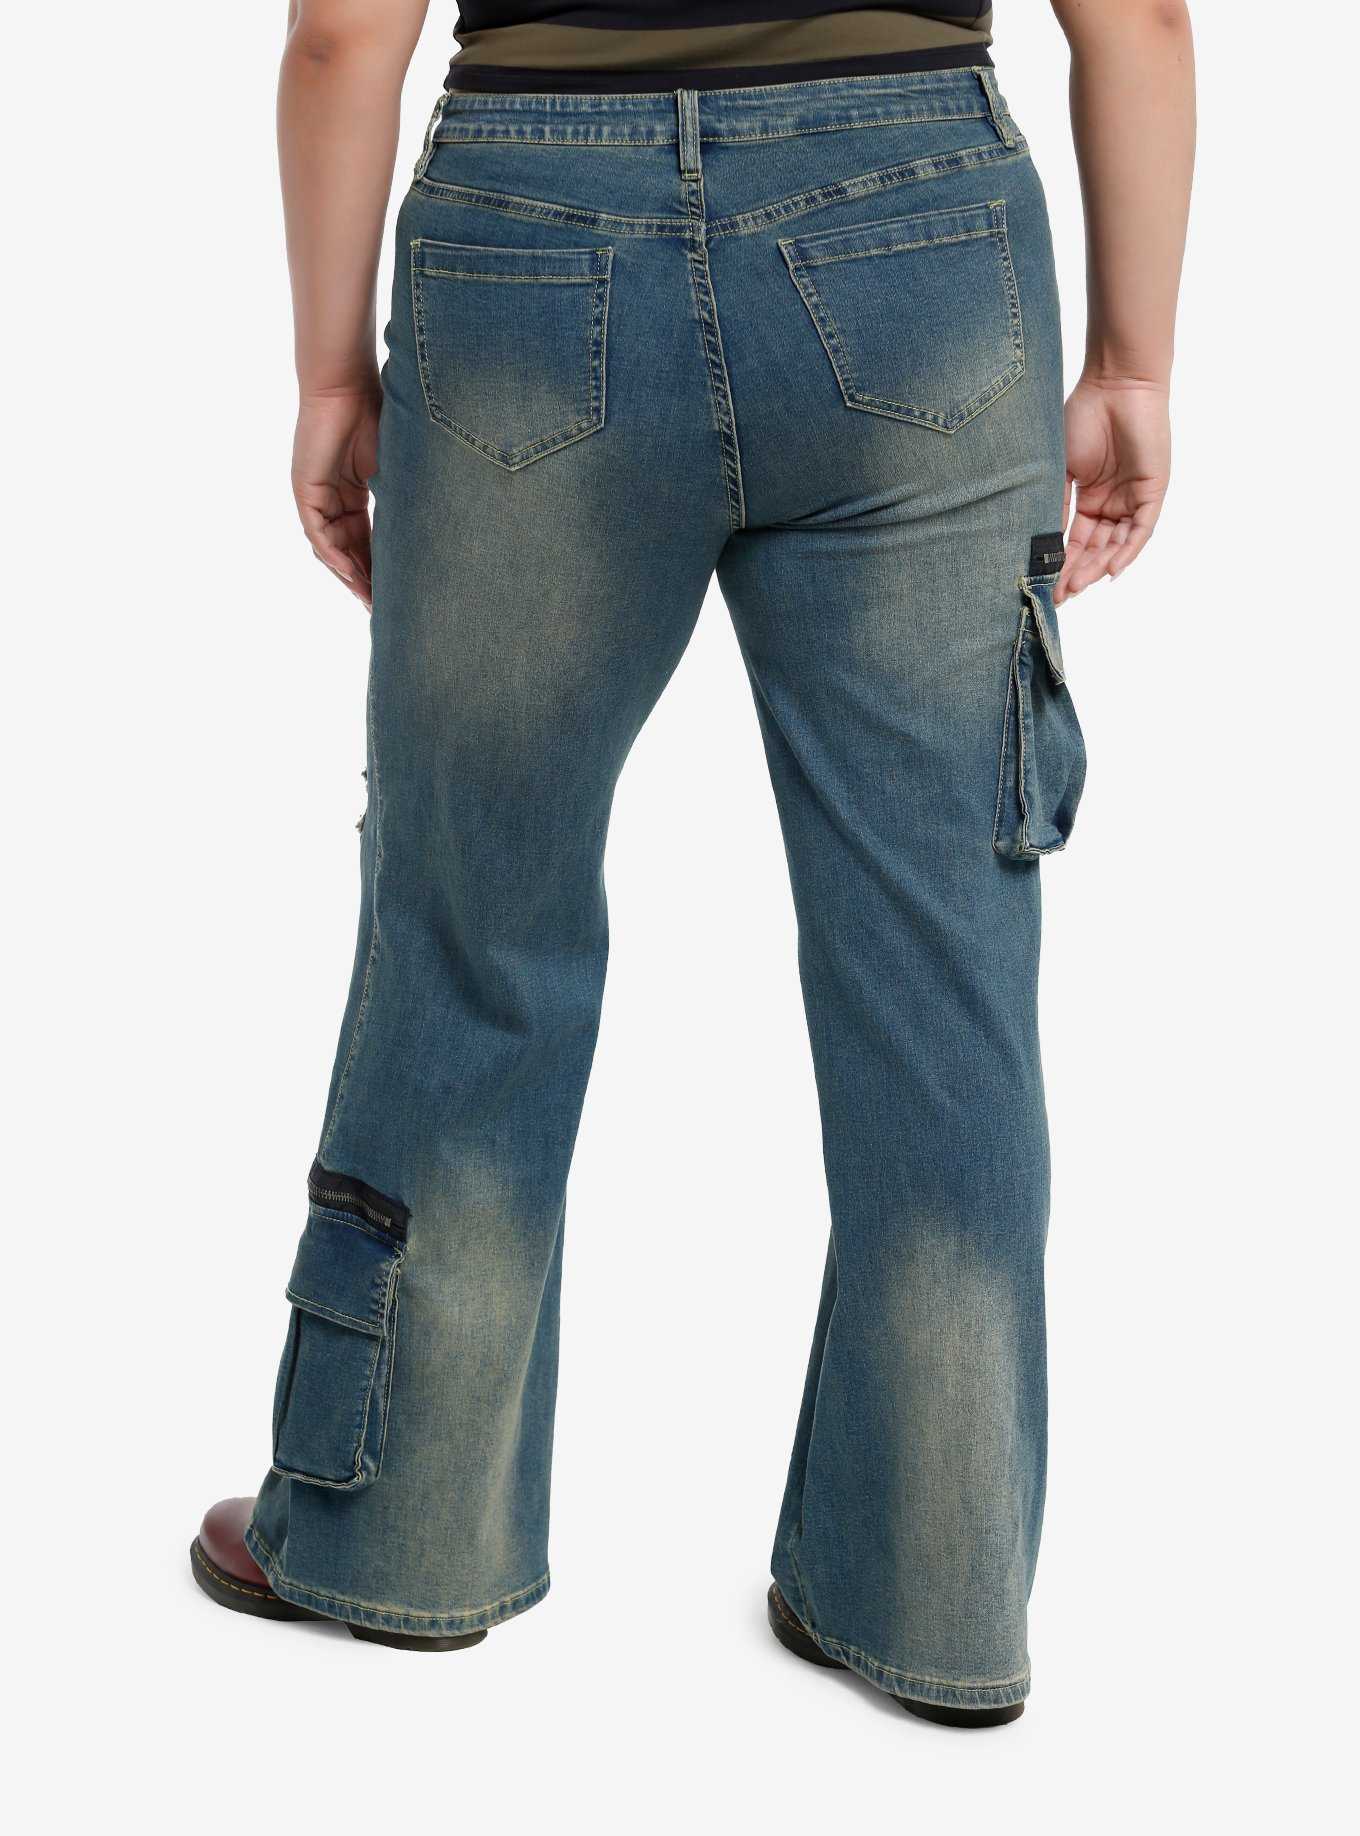 Destructed Zipper Flare Denim Pants Plus Size, , hi-res